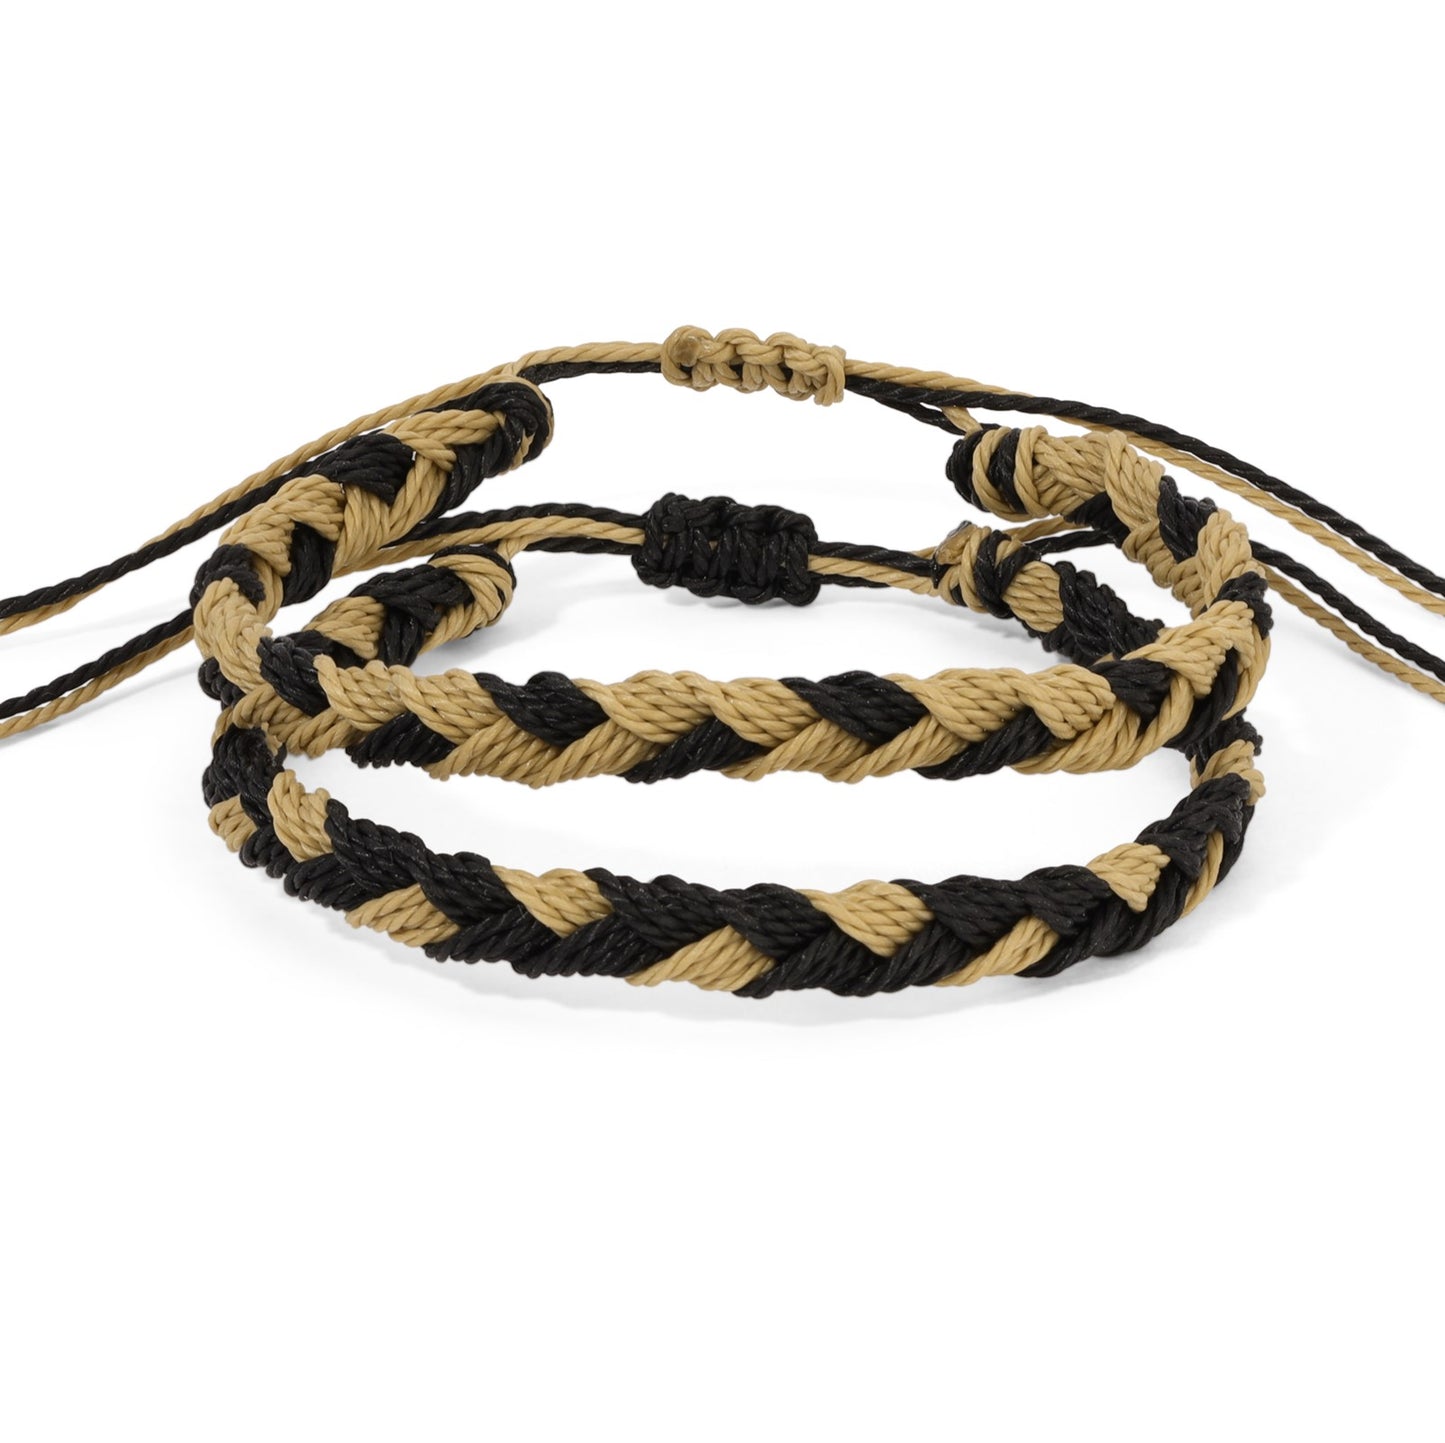 Black and Old Gold Team Color Braided Bracelets - Set of 2